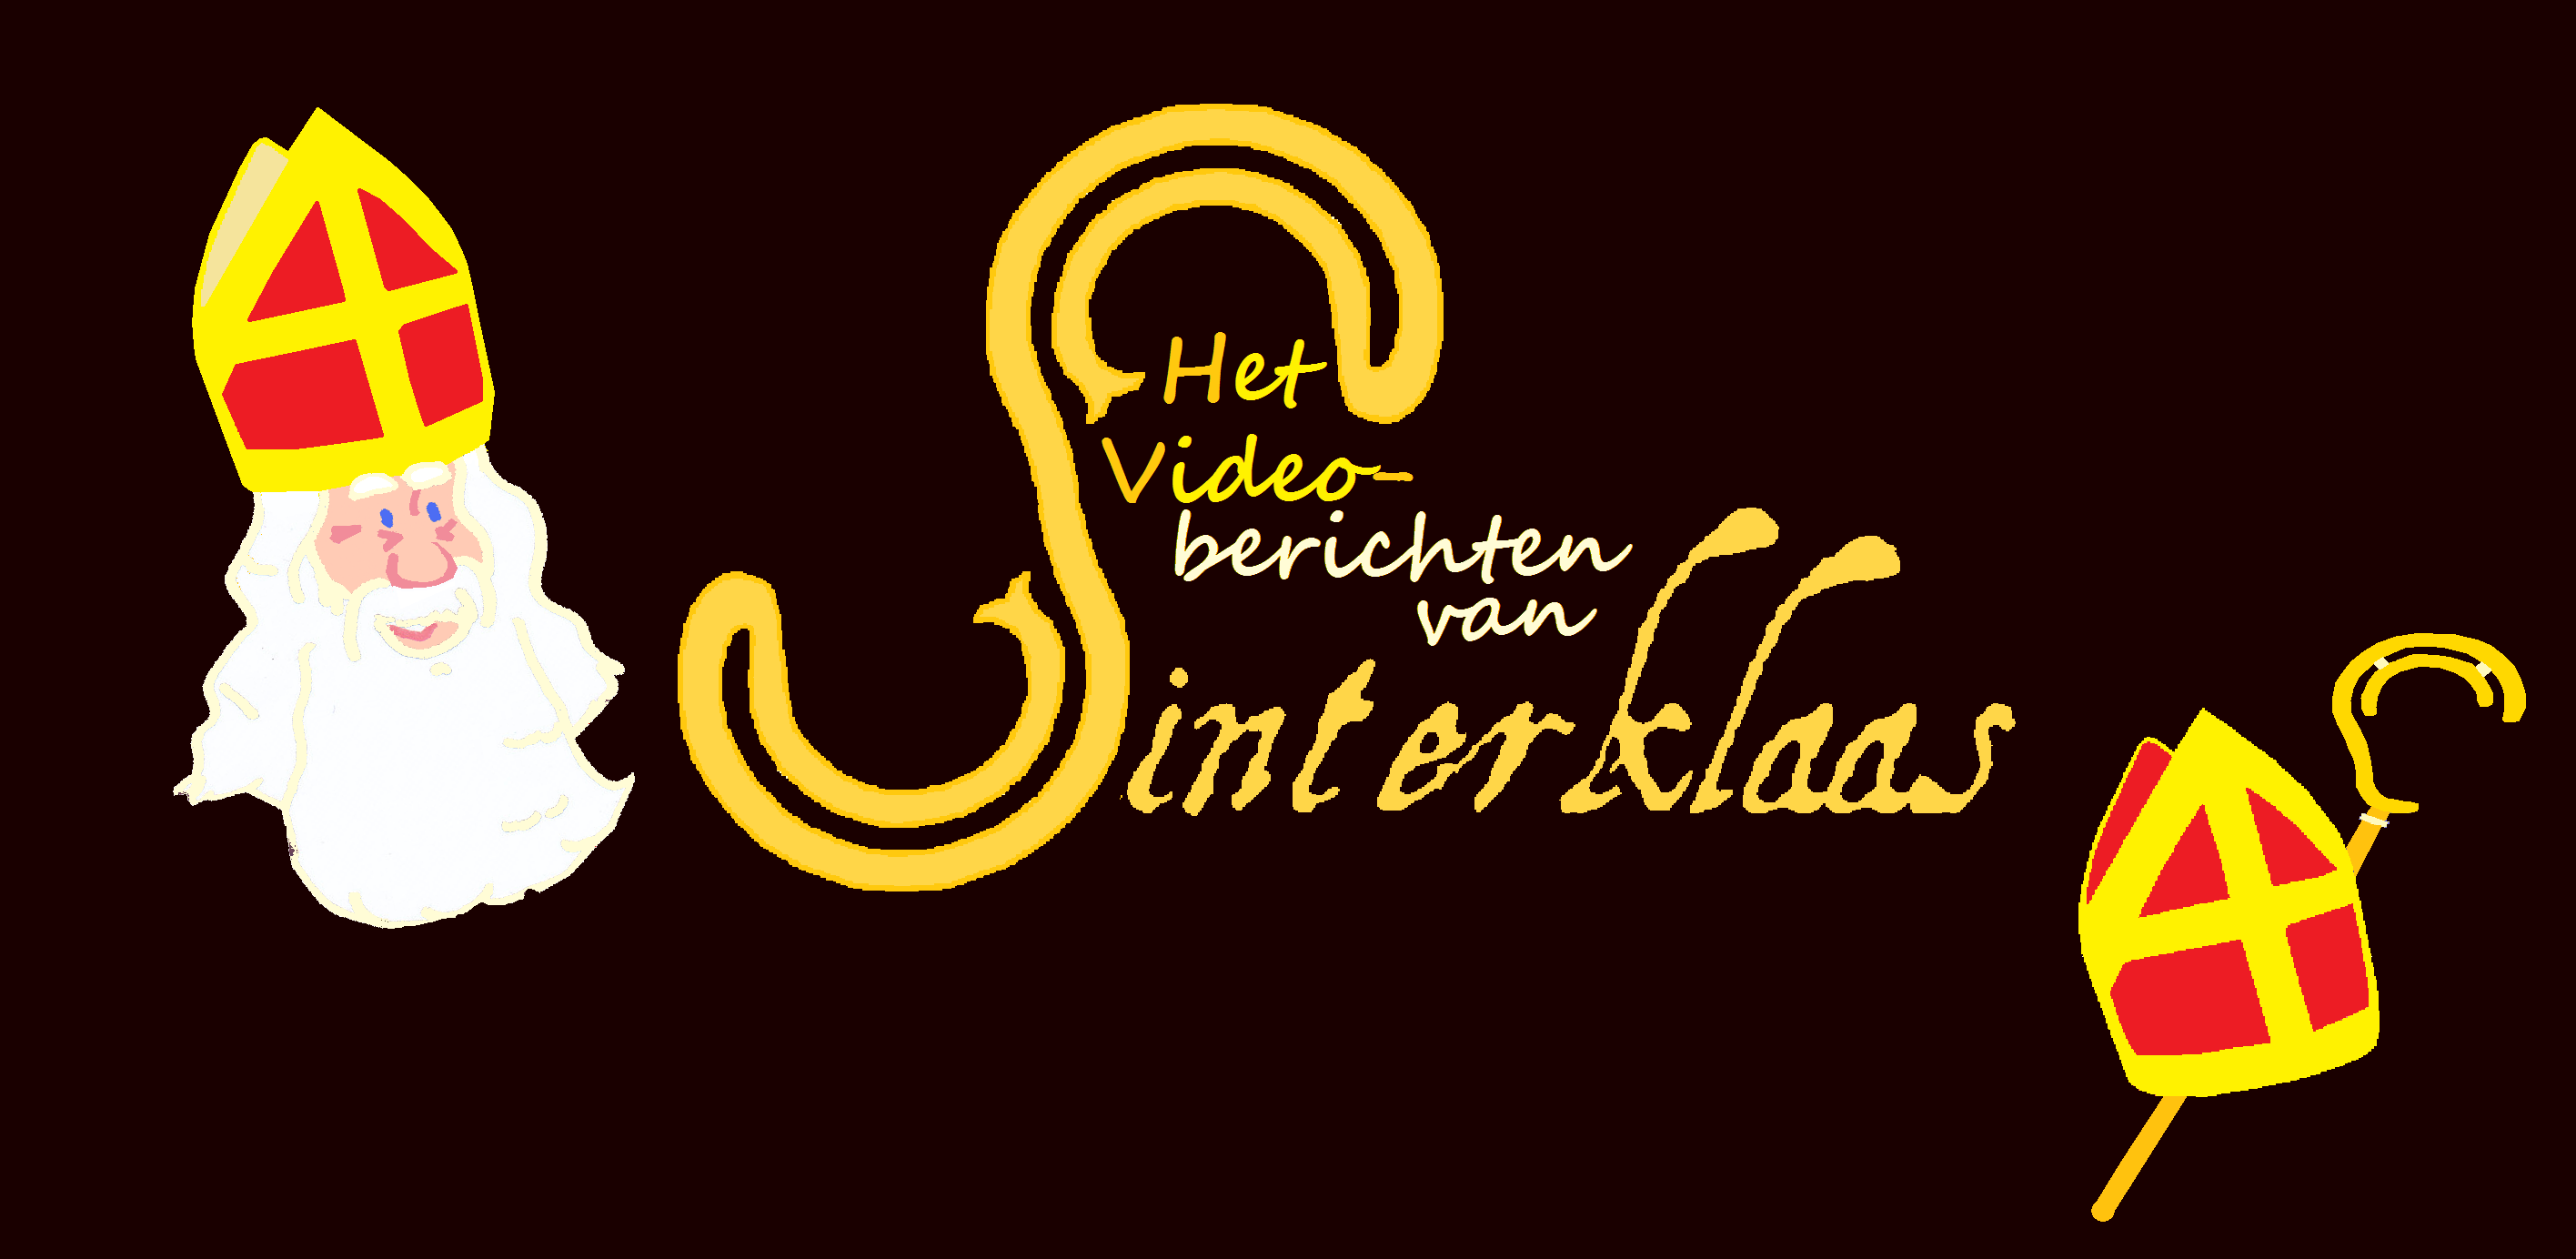 videoberichten van sinterklaas logo